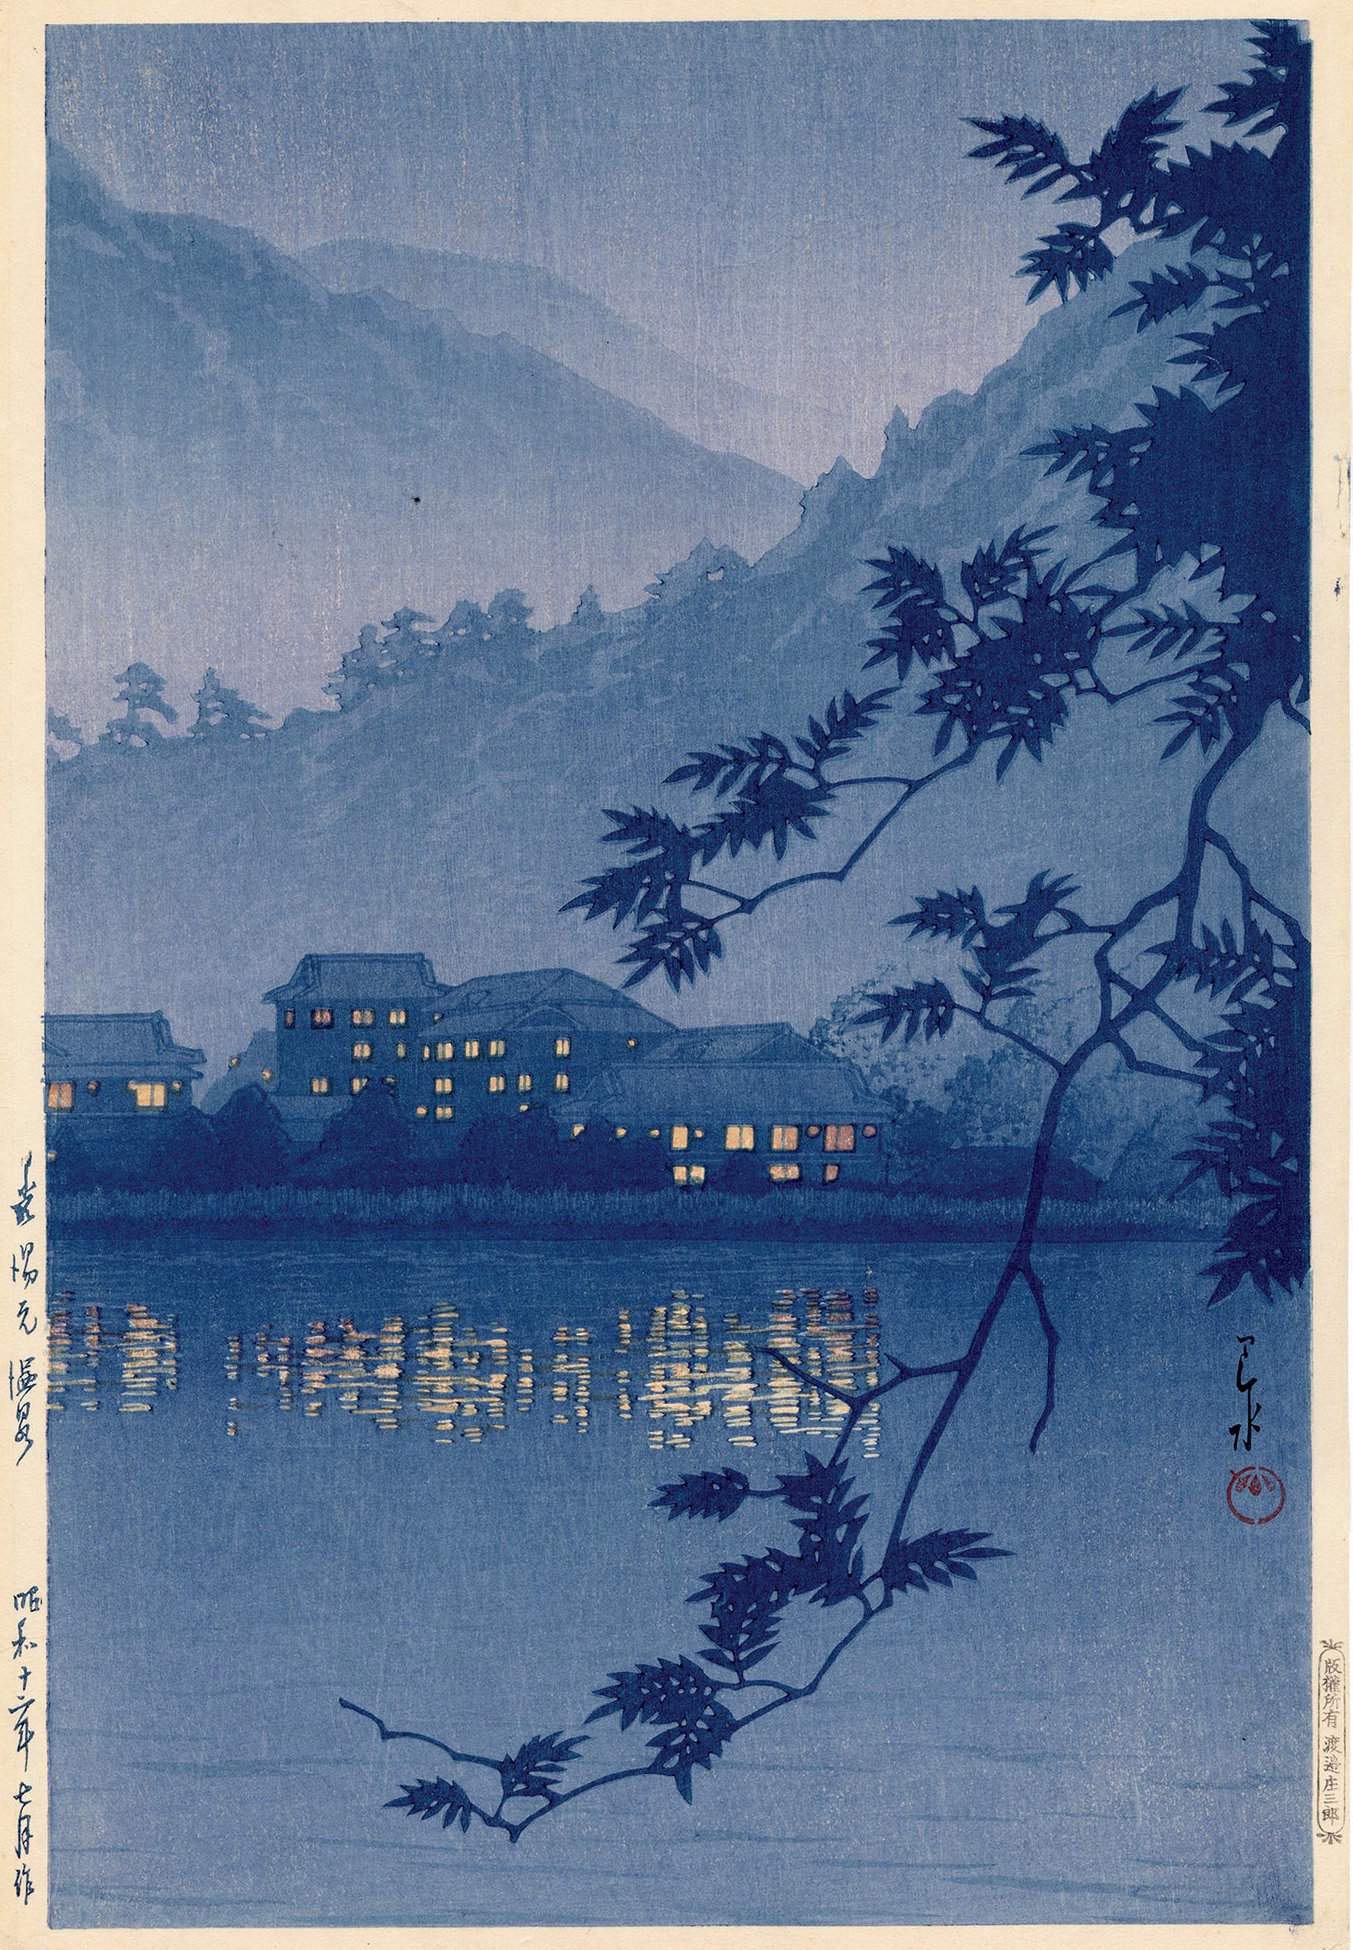 Yumoto Spa at Nikko - Kawase Hasui Catalogue woodblock print